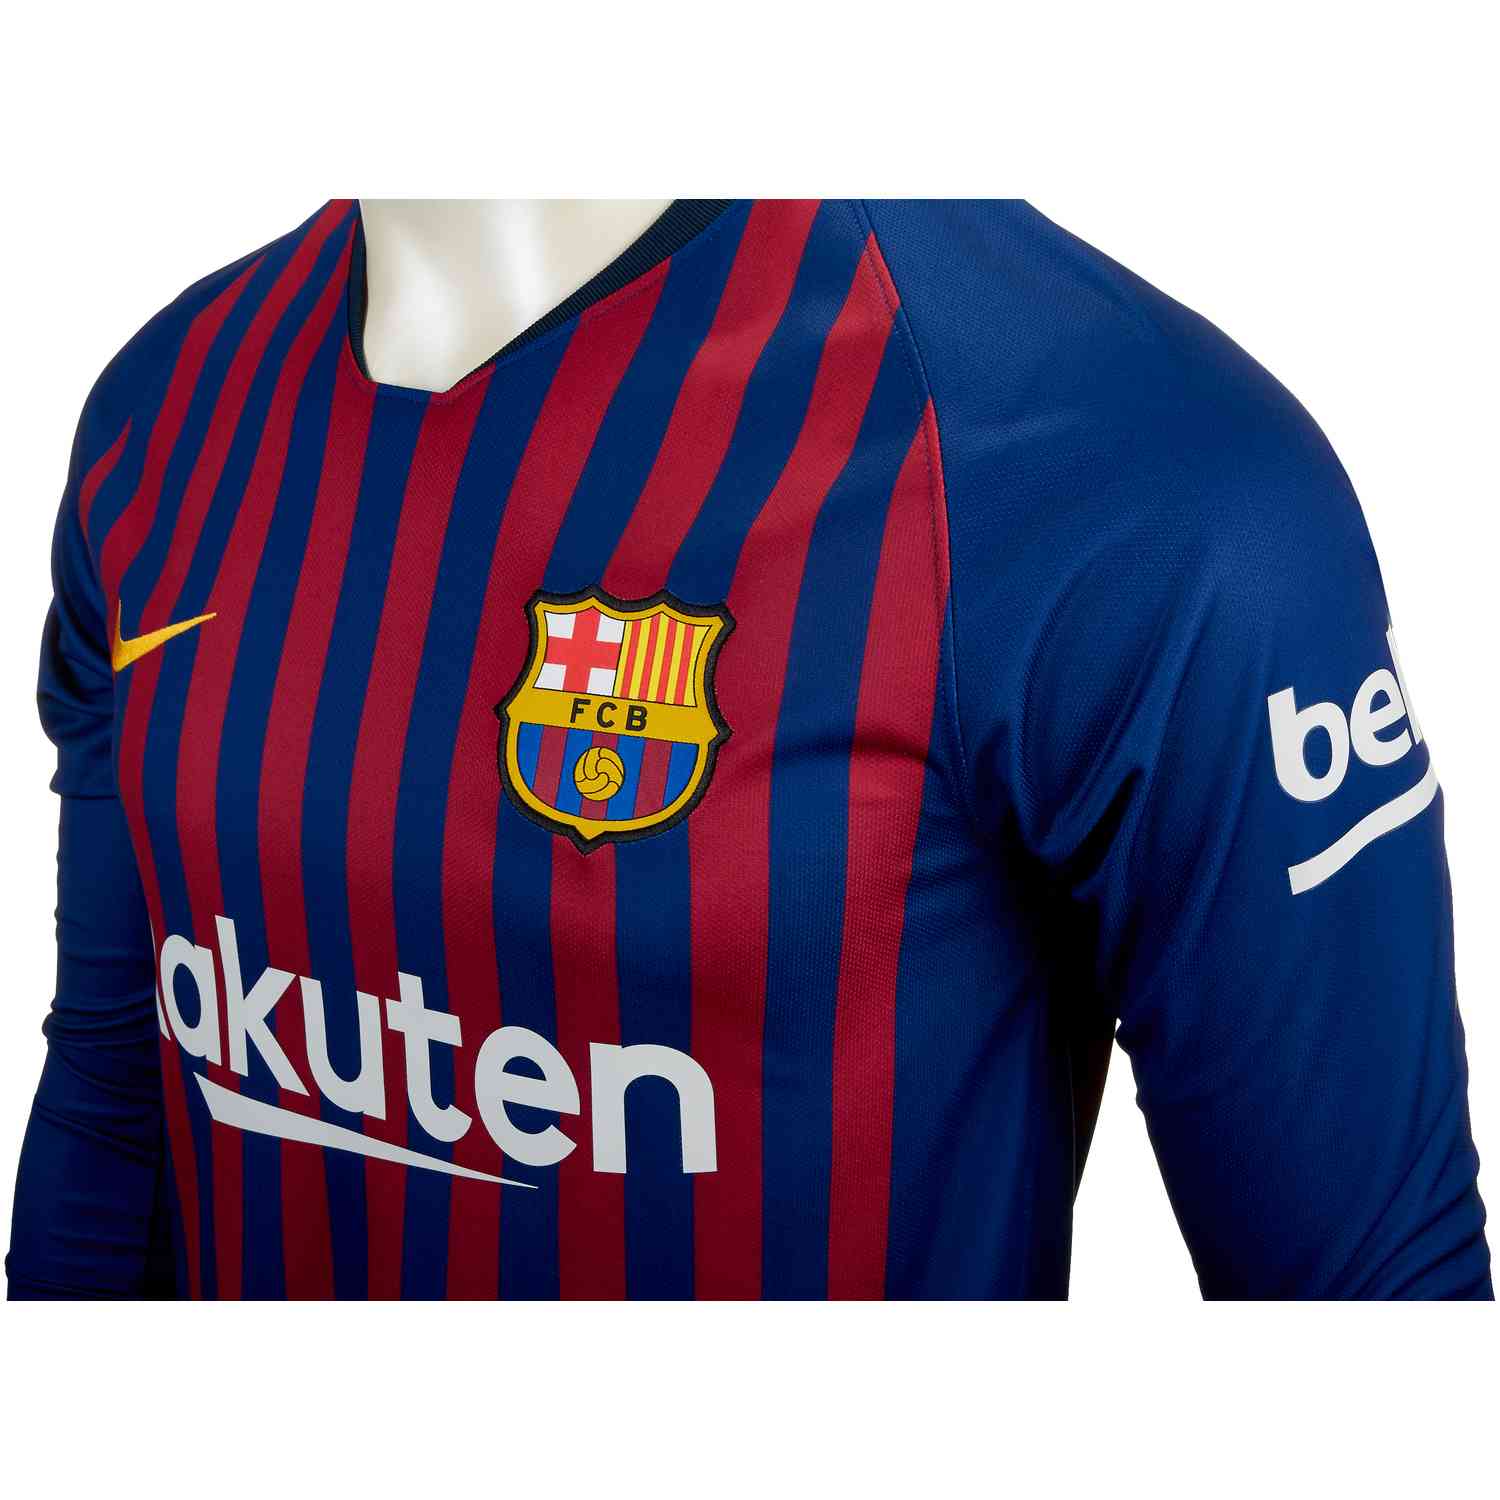 2018/19 Nike Barcelona Home L/S Jersey - SoccerPro